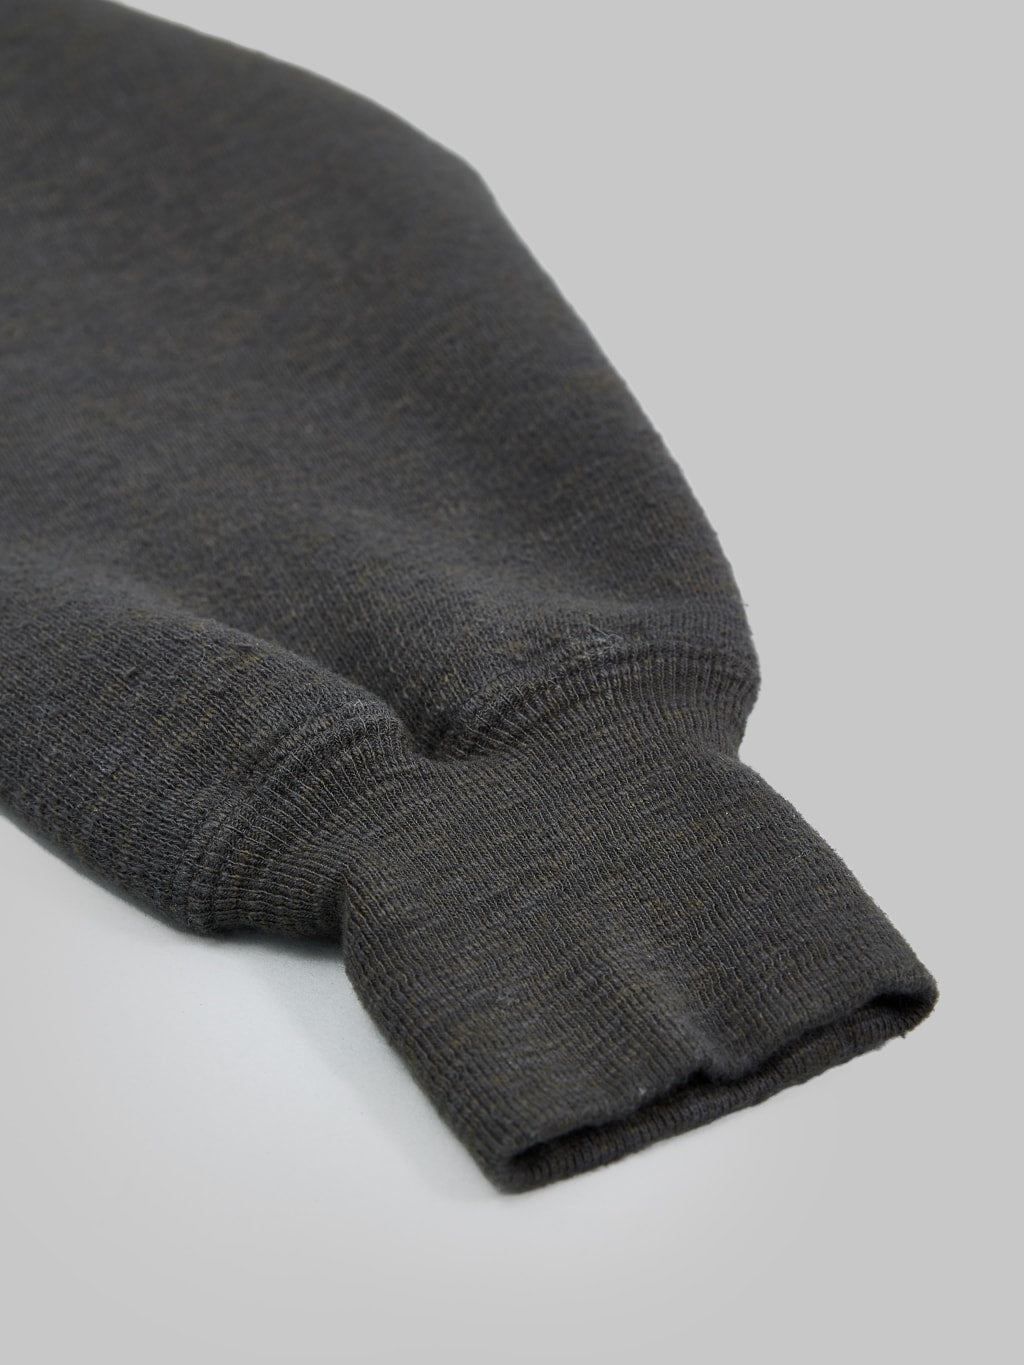 loop and weft big loopback fleece side panel sweatshirt black cuff closeup